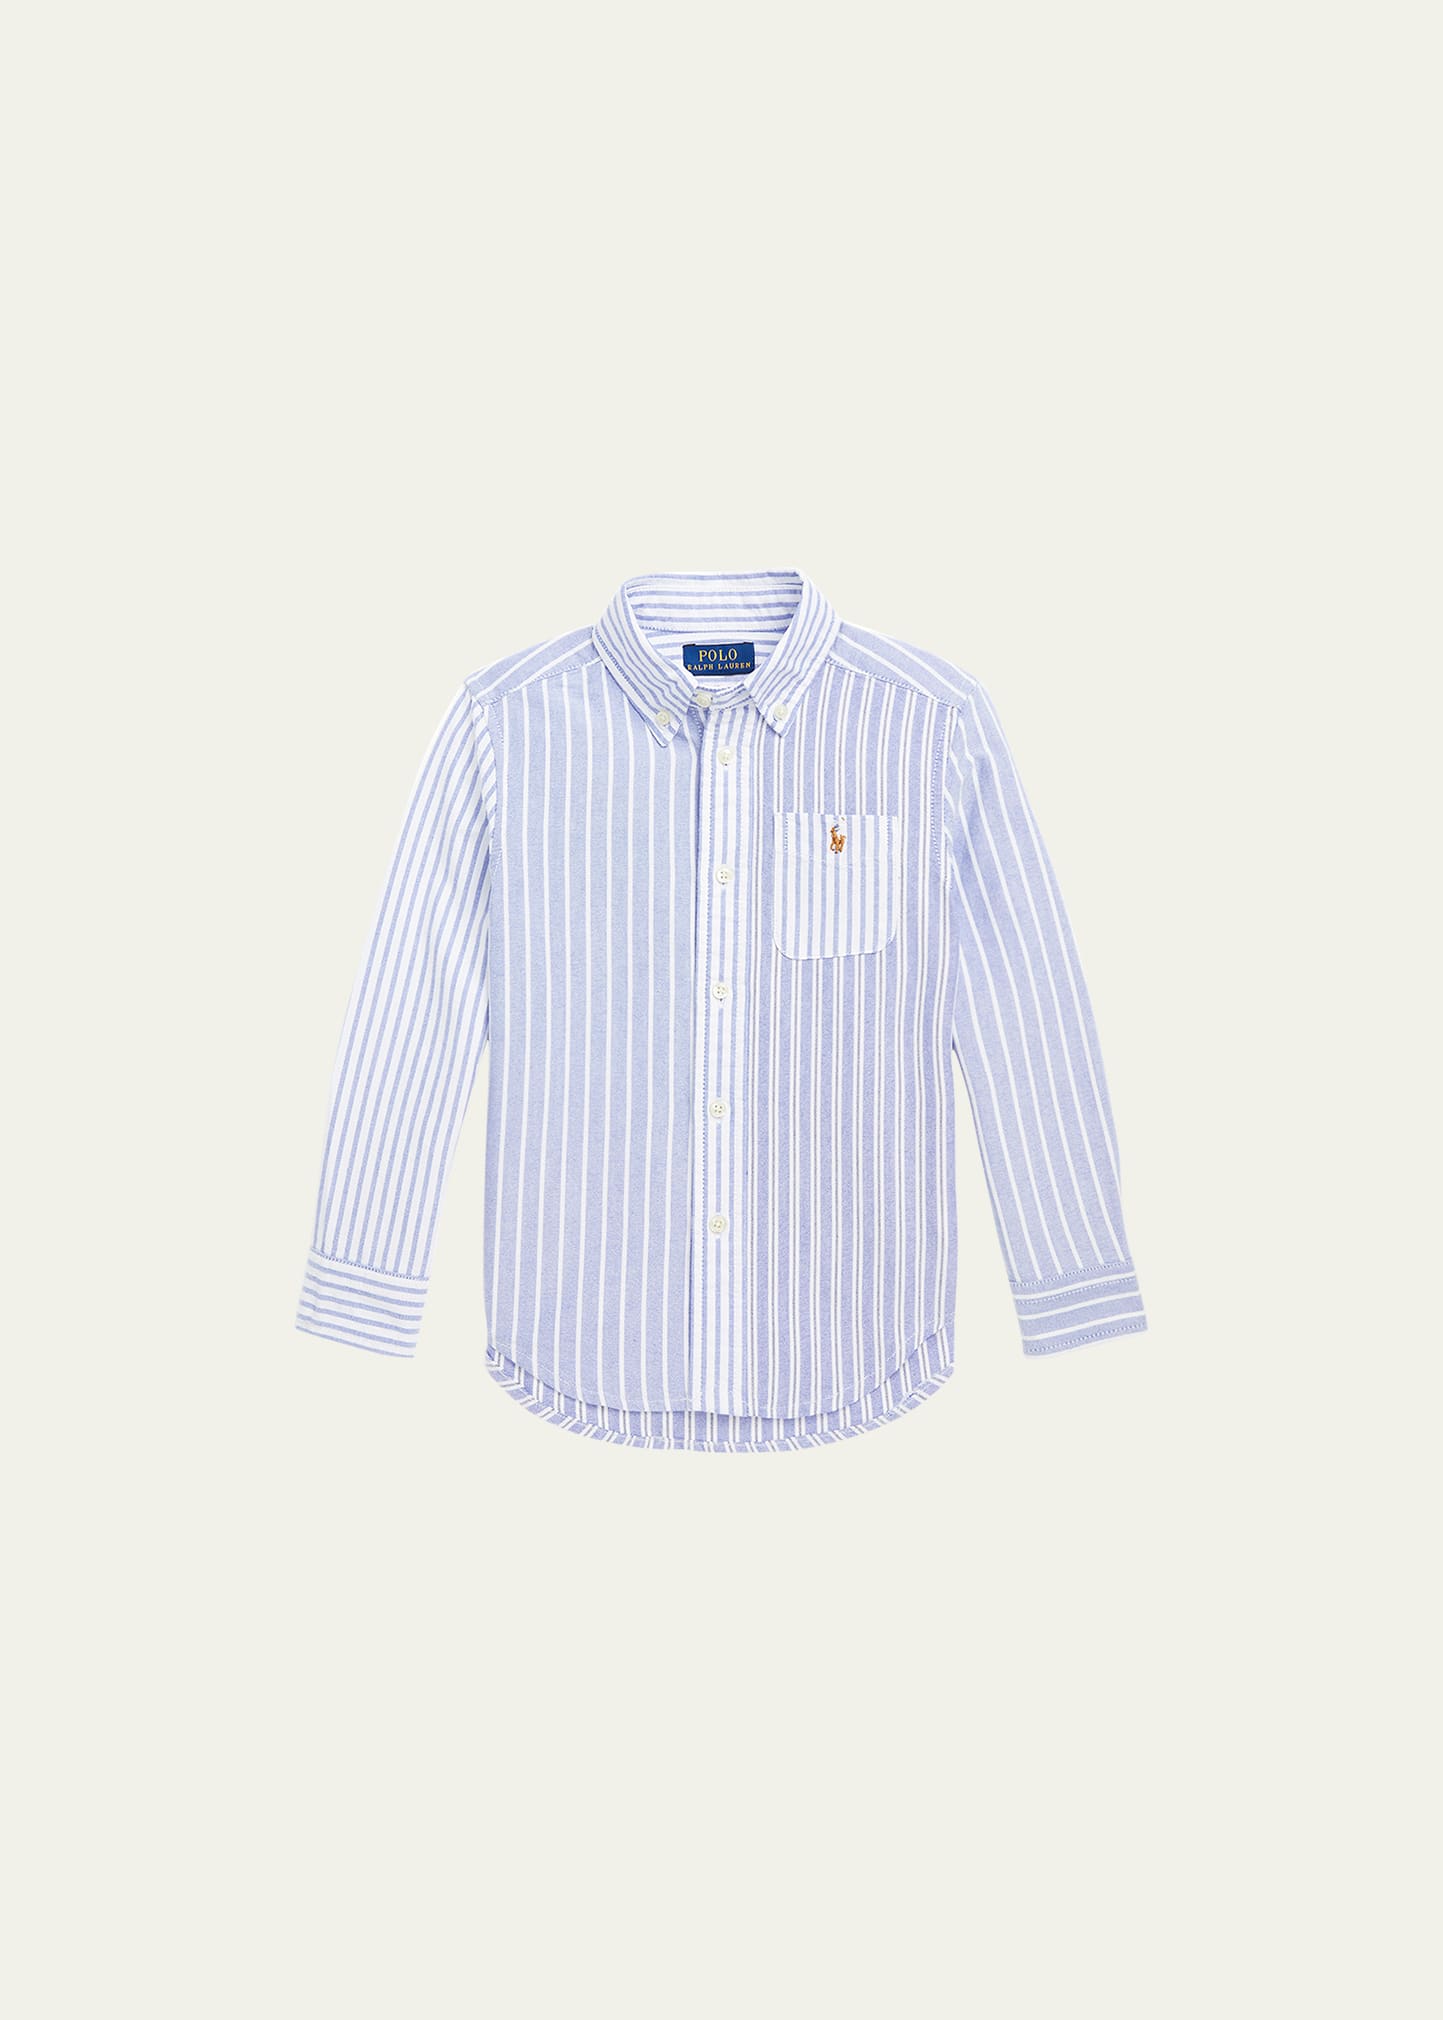 Boy's Striped Oxford Button Down Shirt, Size 2-4